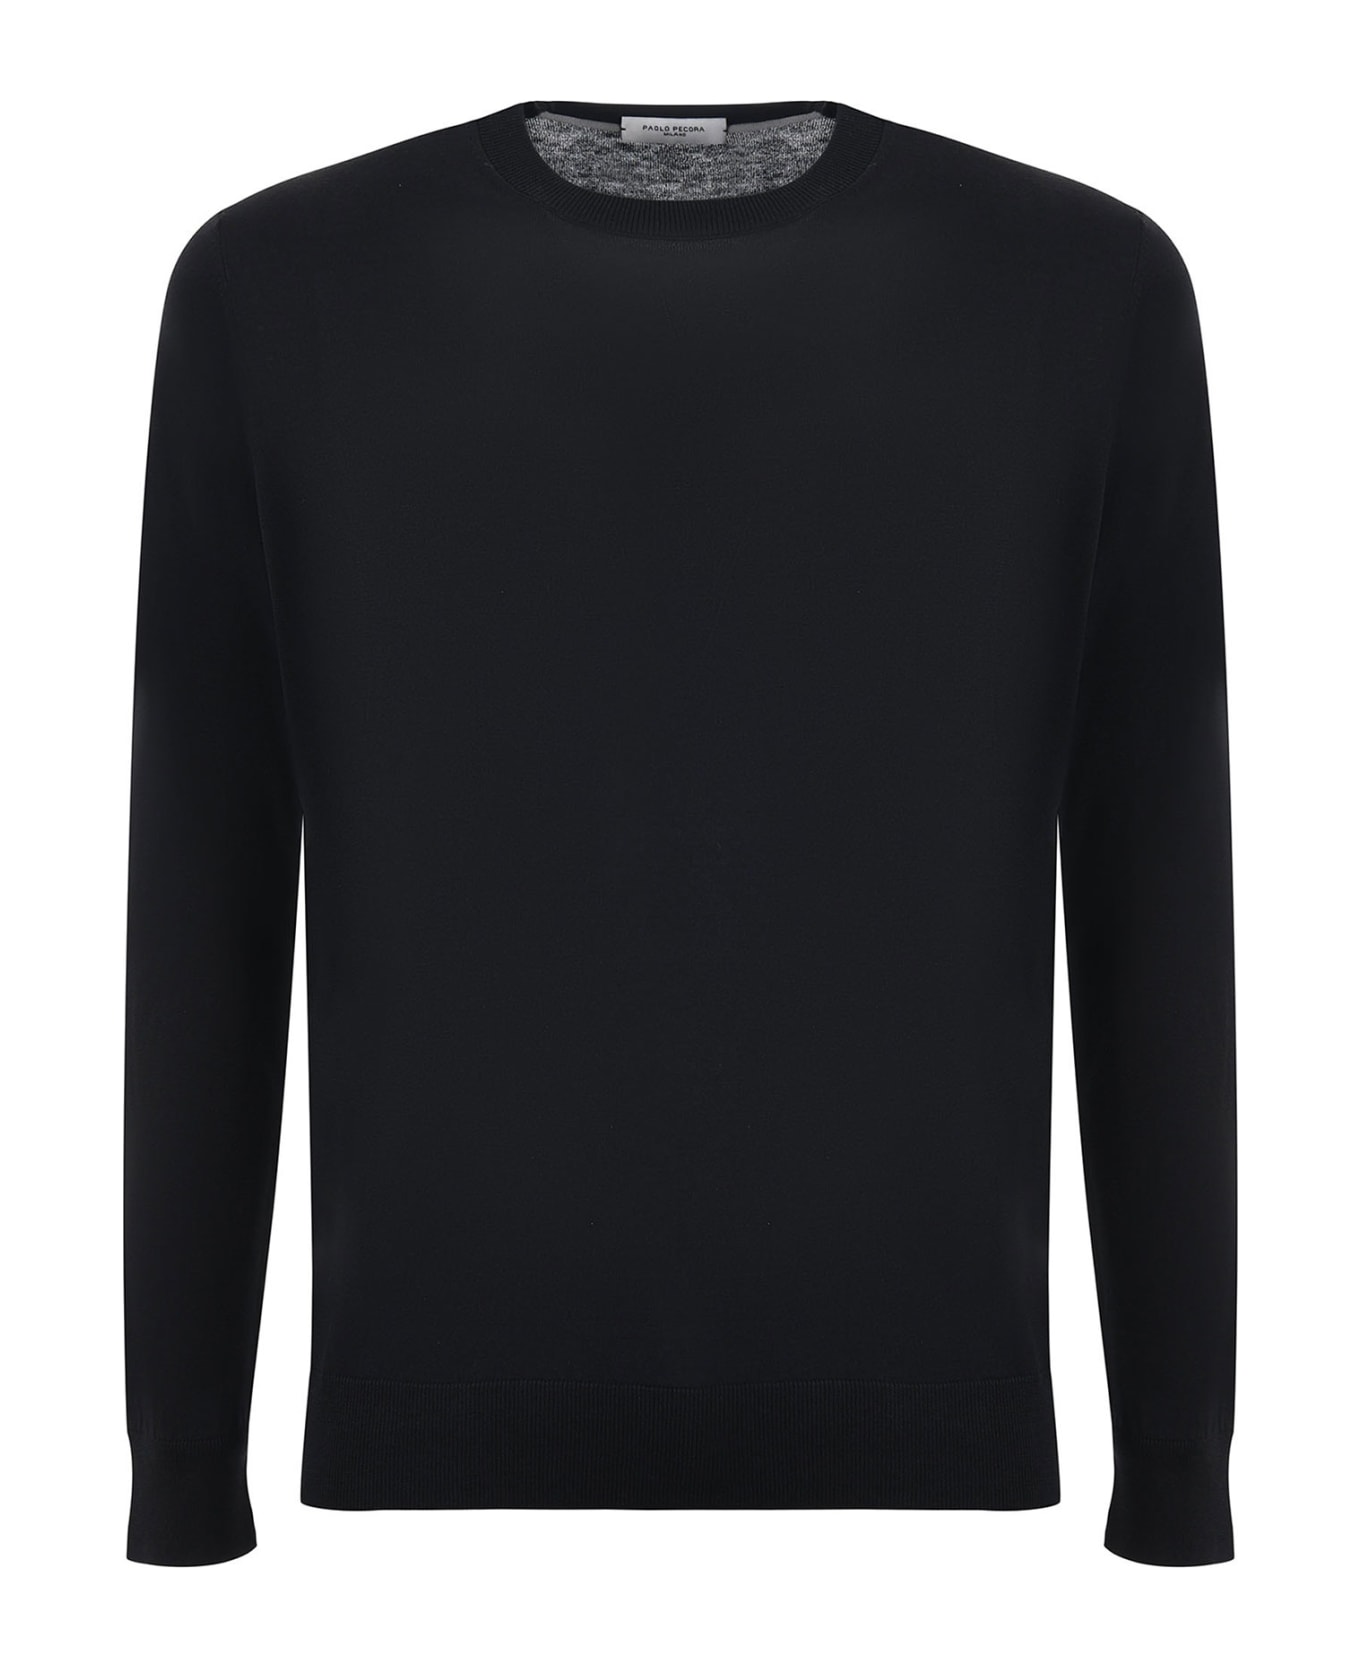 Paolo Pecora Black Crew-neck Sweater In Cotton And Silk Blend - NERO